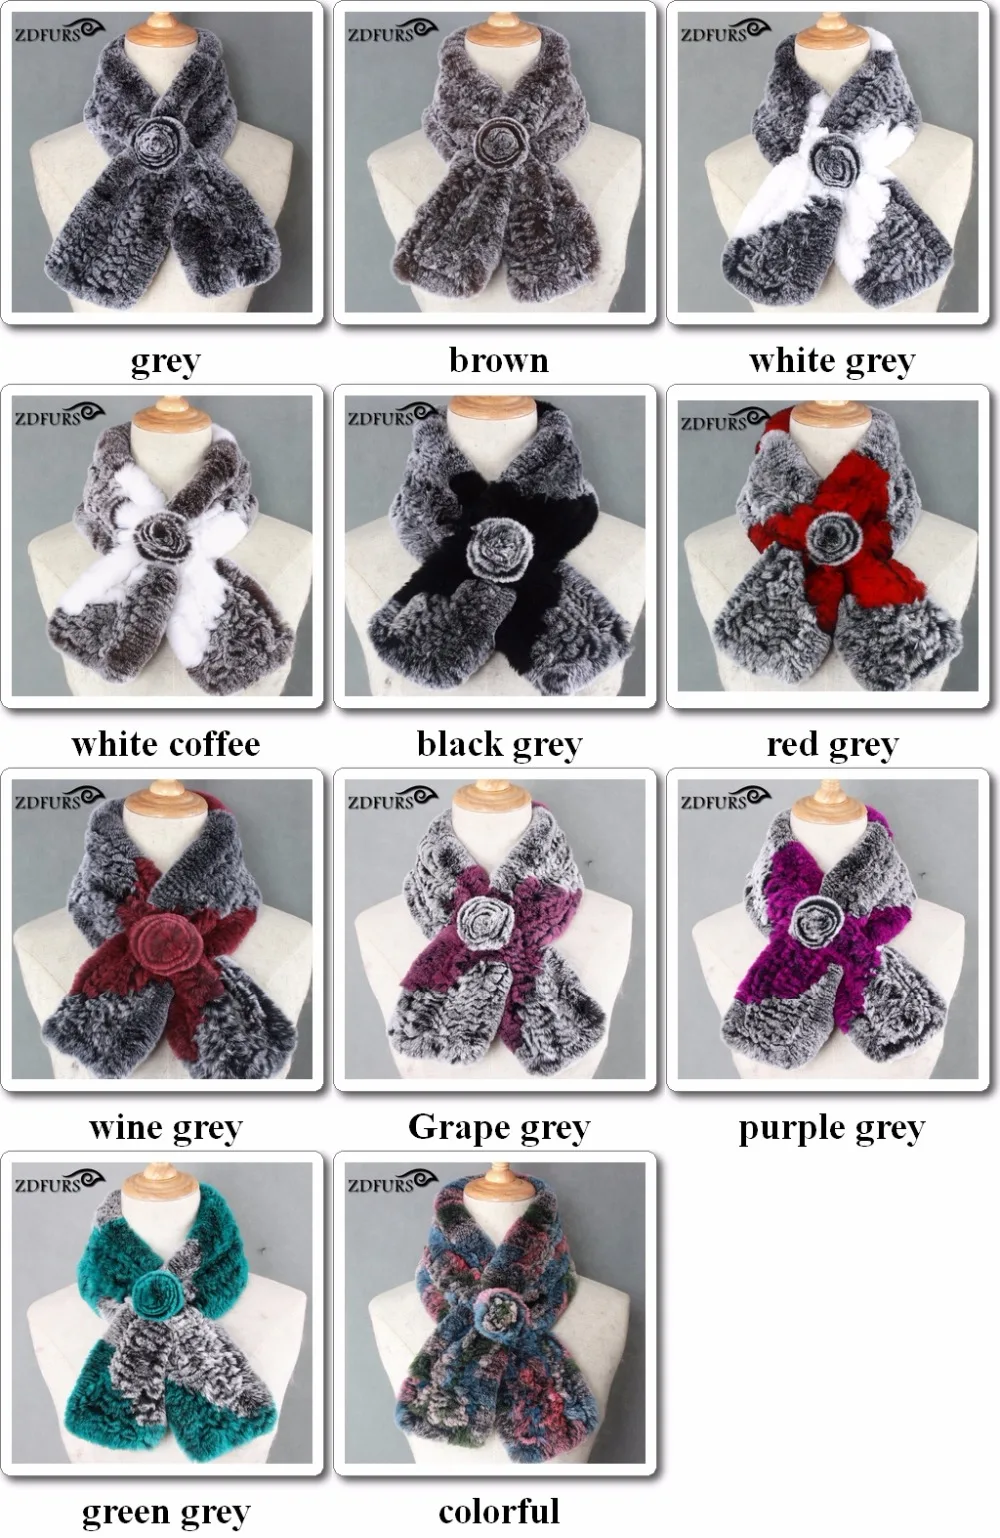 FXFURS женские зимние модные натуральный настоящий мех кролика кольцо шарф женские теплые шарфы натуральный мех шарф для женщин